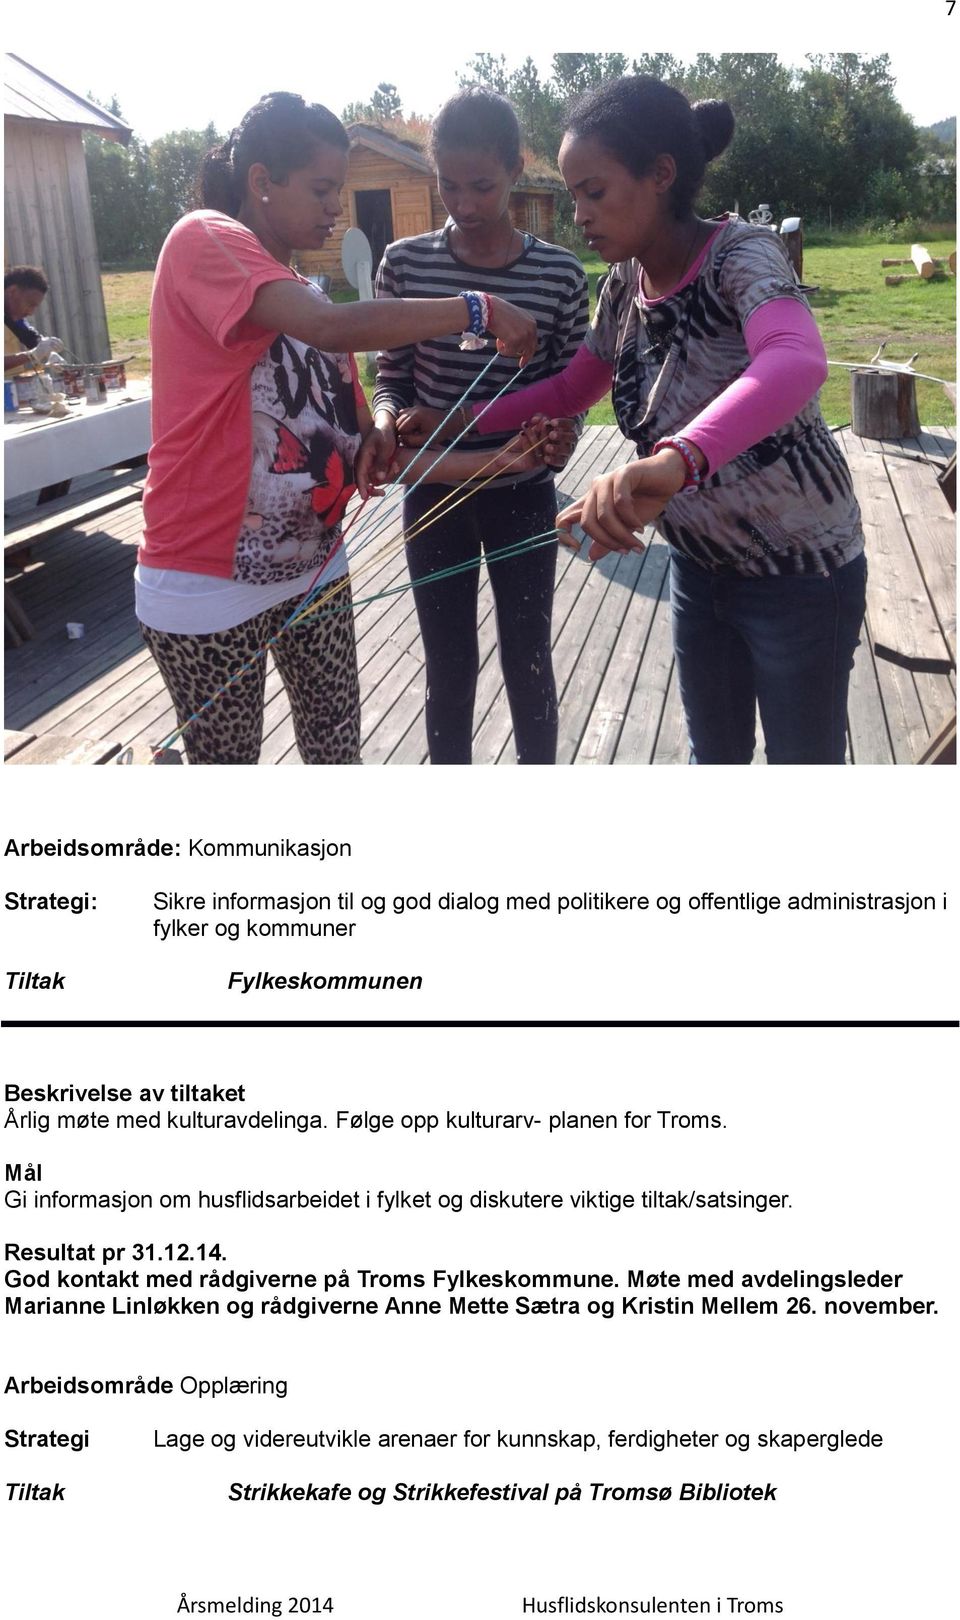 Gi informasjon om husflidsarbeidet i fylket og diskutere viktige tiltak/satsinger.. God kontakt med rådgiverne på Troms Fylkeskommune.